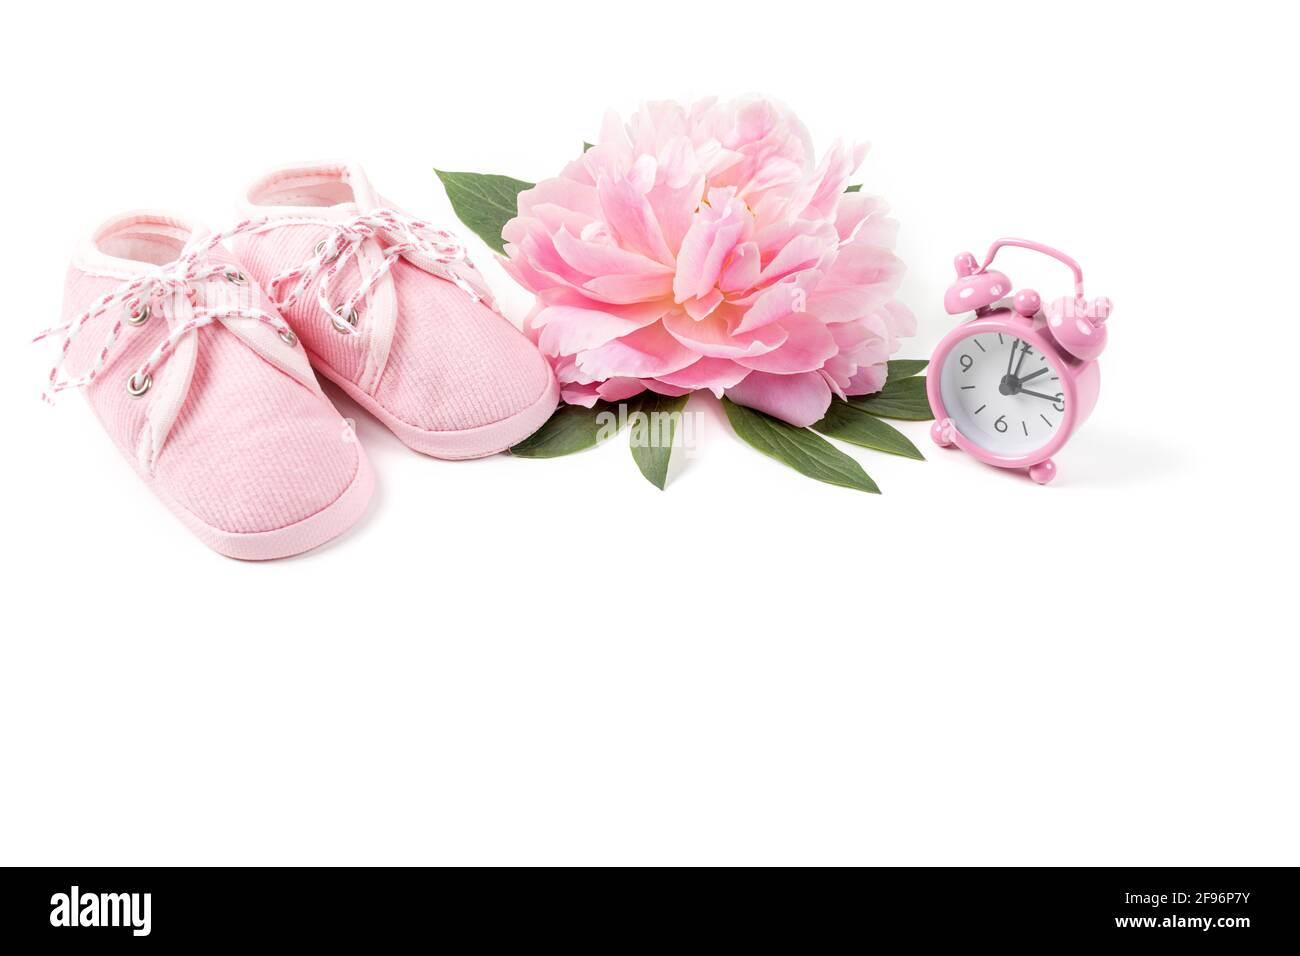 Rosa Babyschuhe mit Pfingstrose und Wecker auf weißem Hintergrund. Grußkarte oder Einladung für Neugeborene. Speicherplatz kopieren. Stockfoto